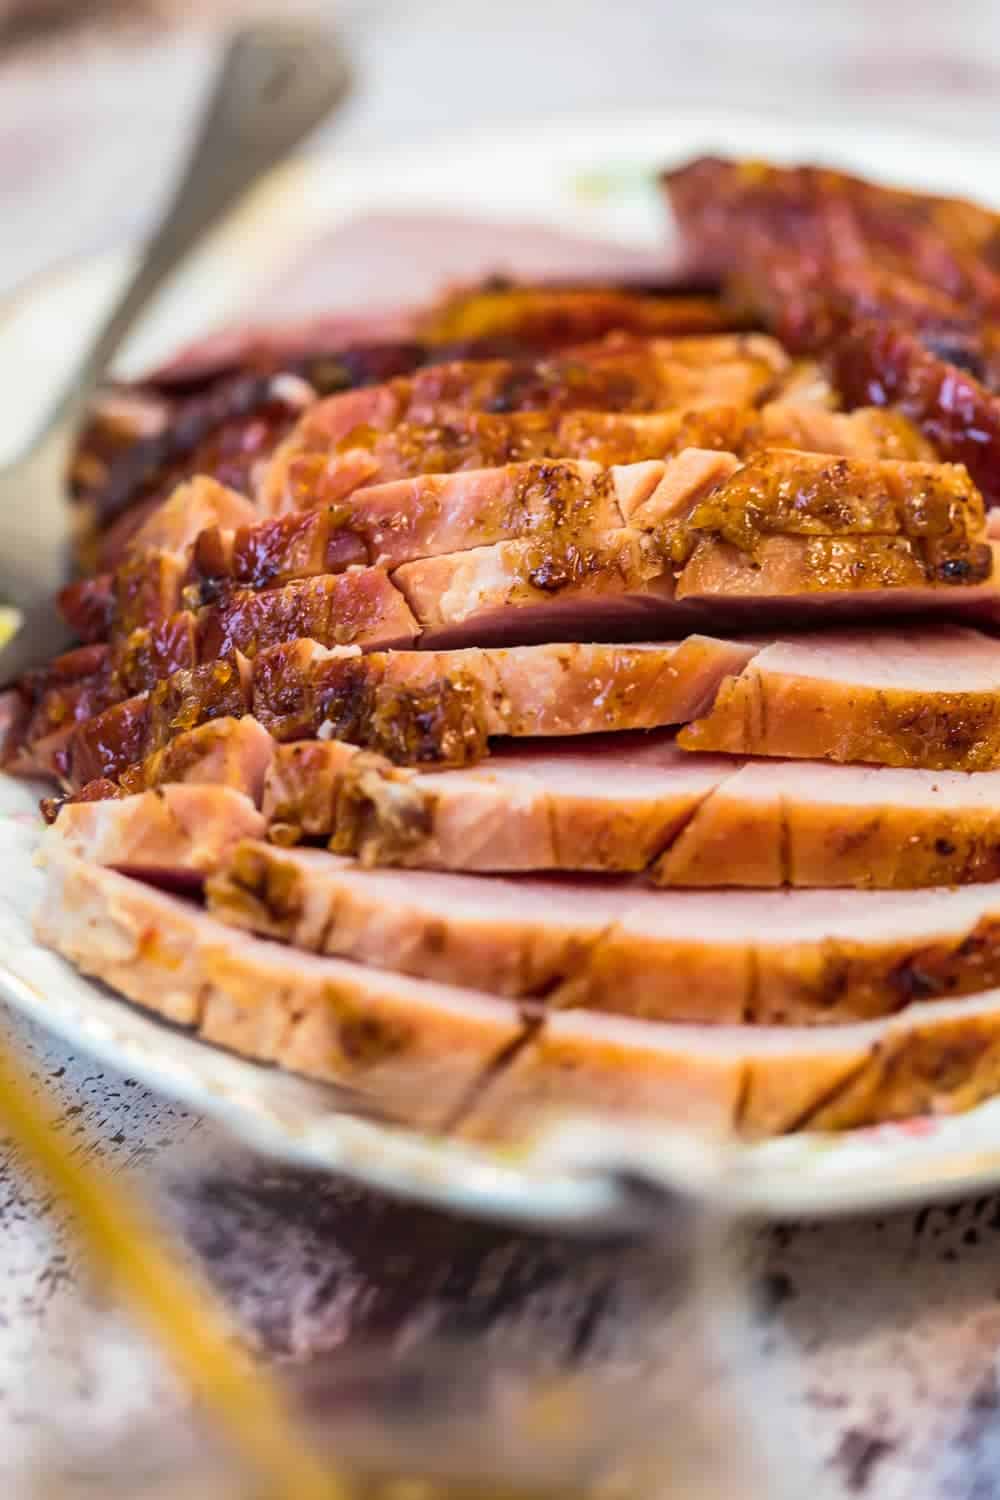 Marmalade Glazed Ham sliced on a plate